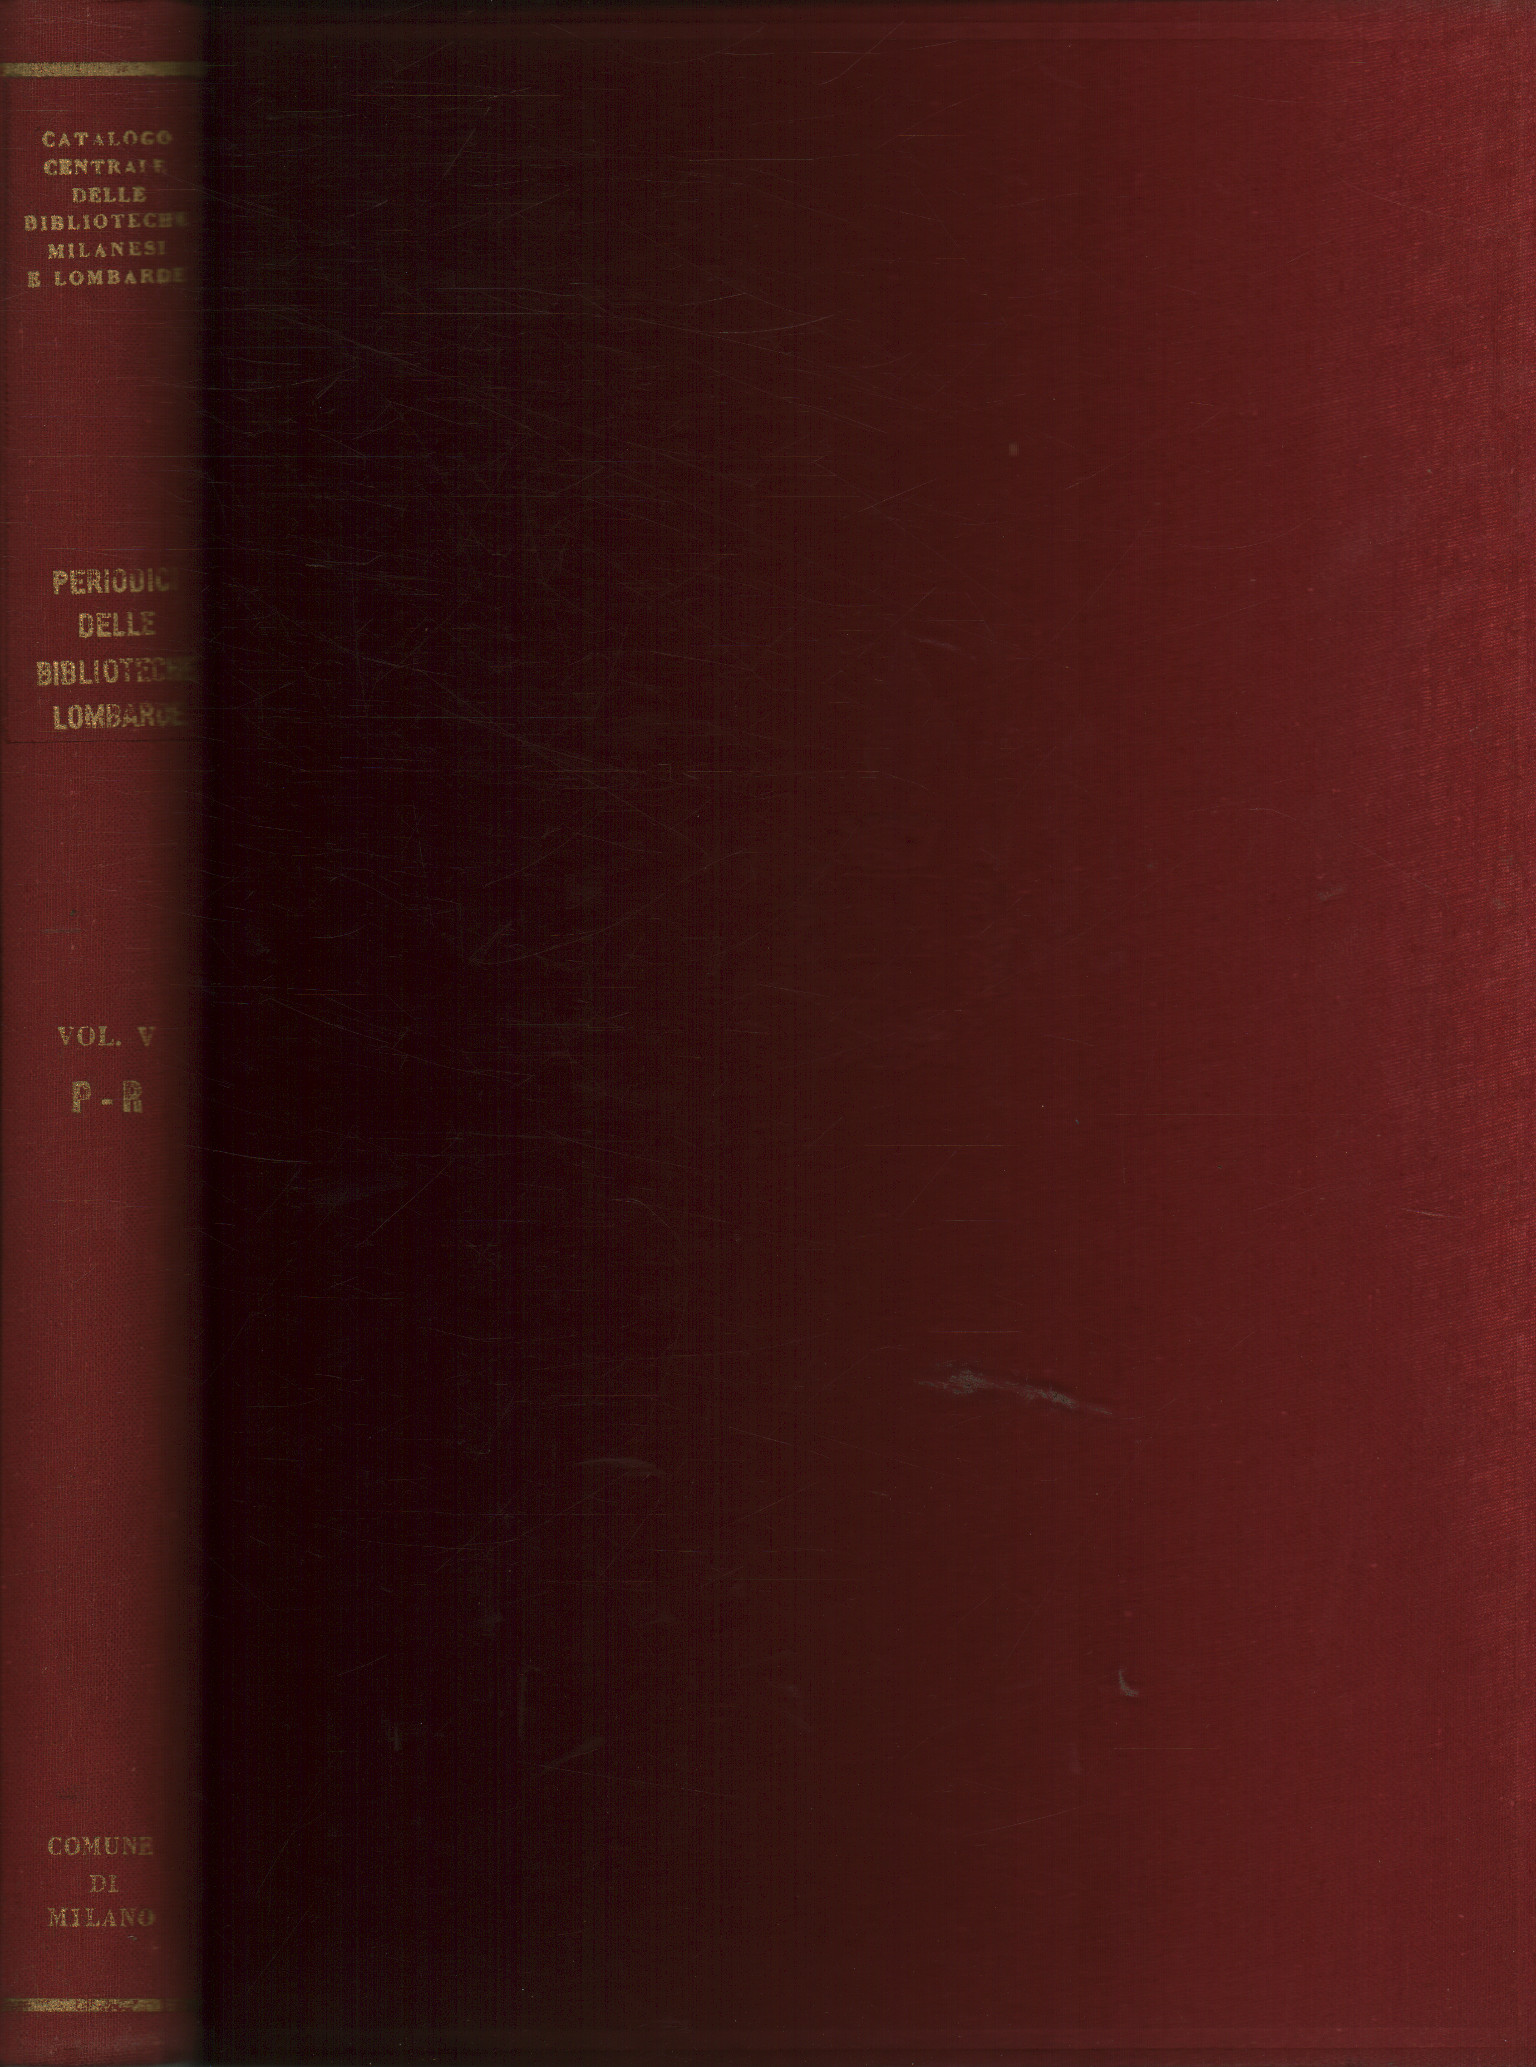 Catálogo de publicaciones periódicas de las bibliotecas lombardas., AA.VV